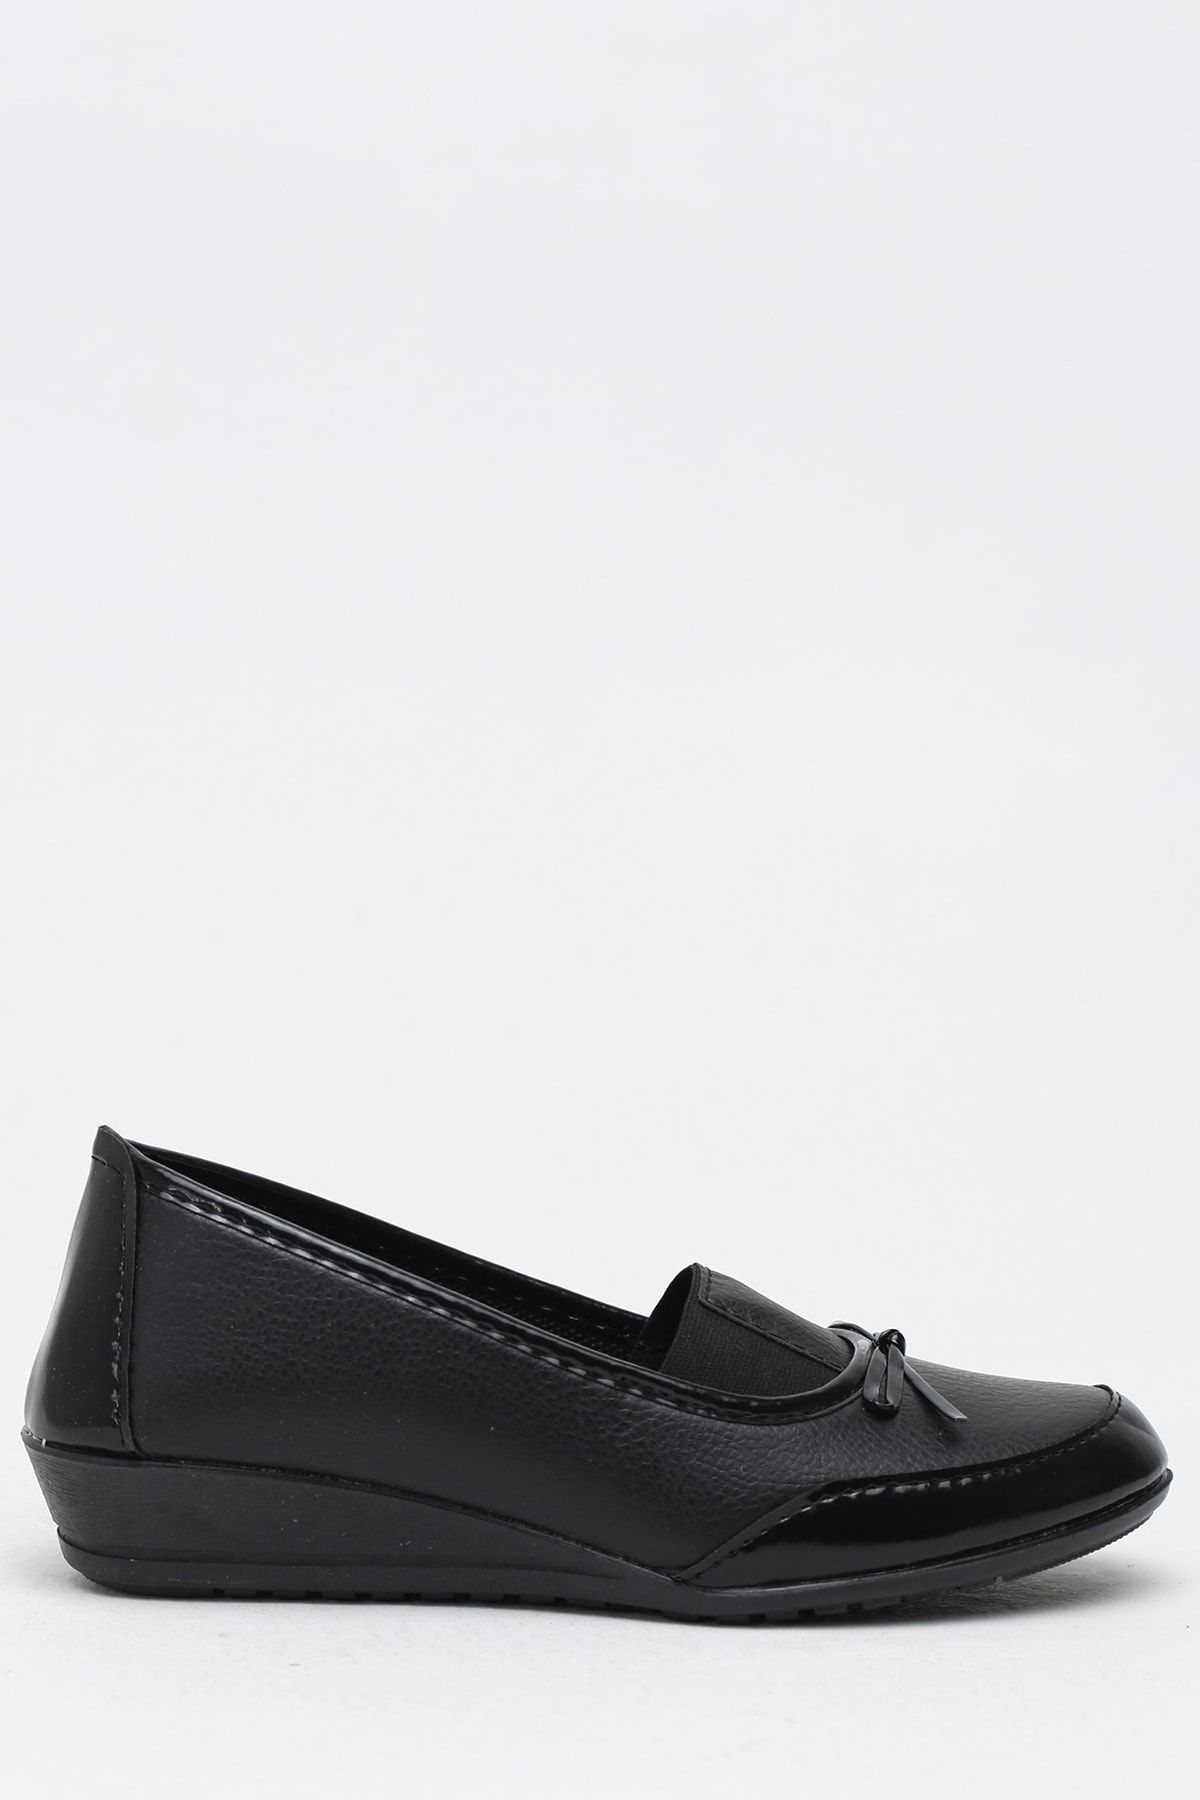 Ayakkabı Modası Siyah Kadın Babet M5003-19-111003R